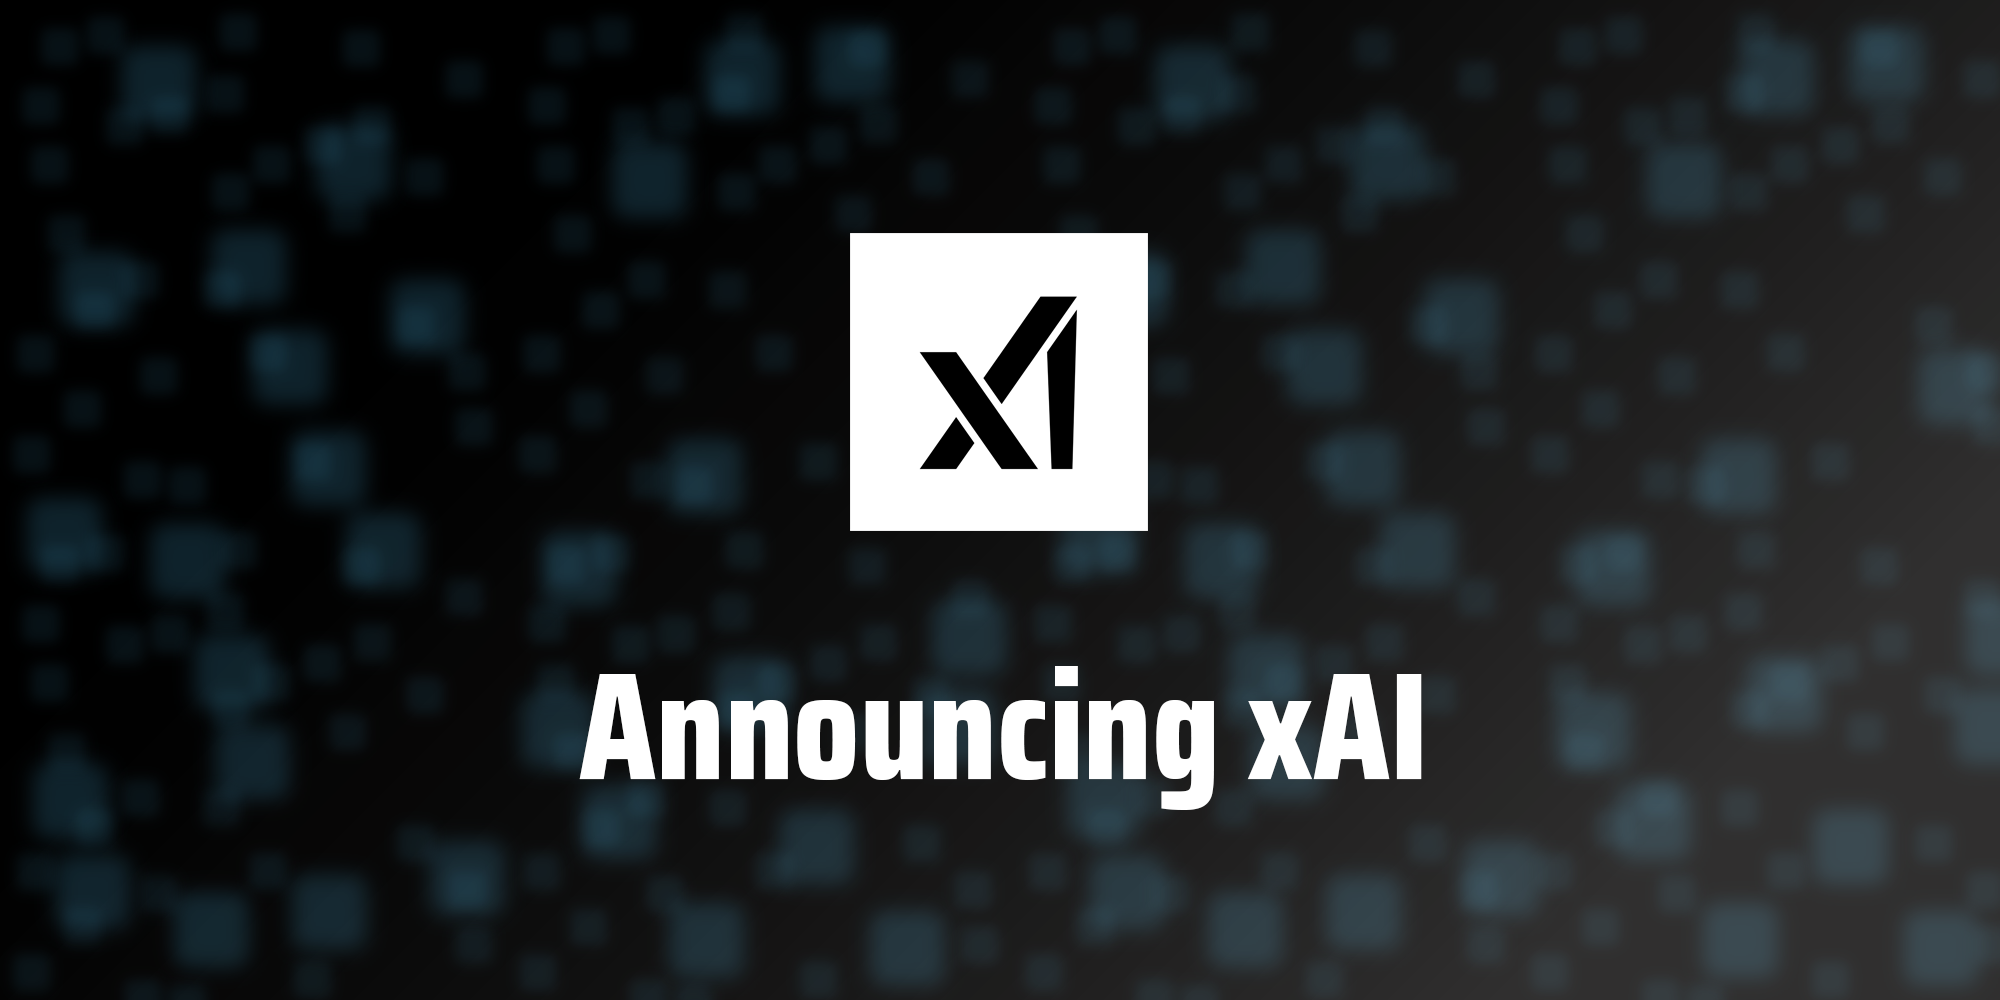 xAI brengt eerste model van kunstmatige intelligentie uit voor een 'selecte groep gebruikers'